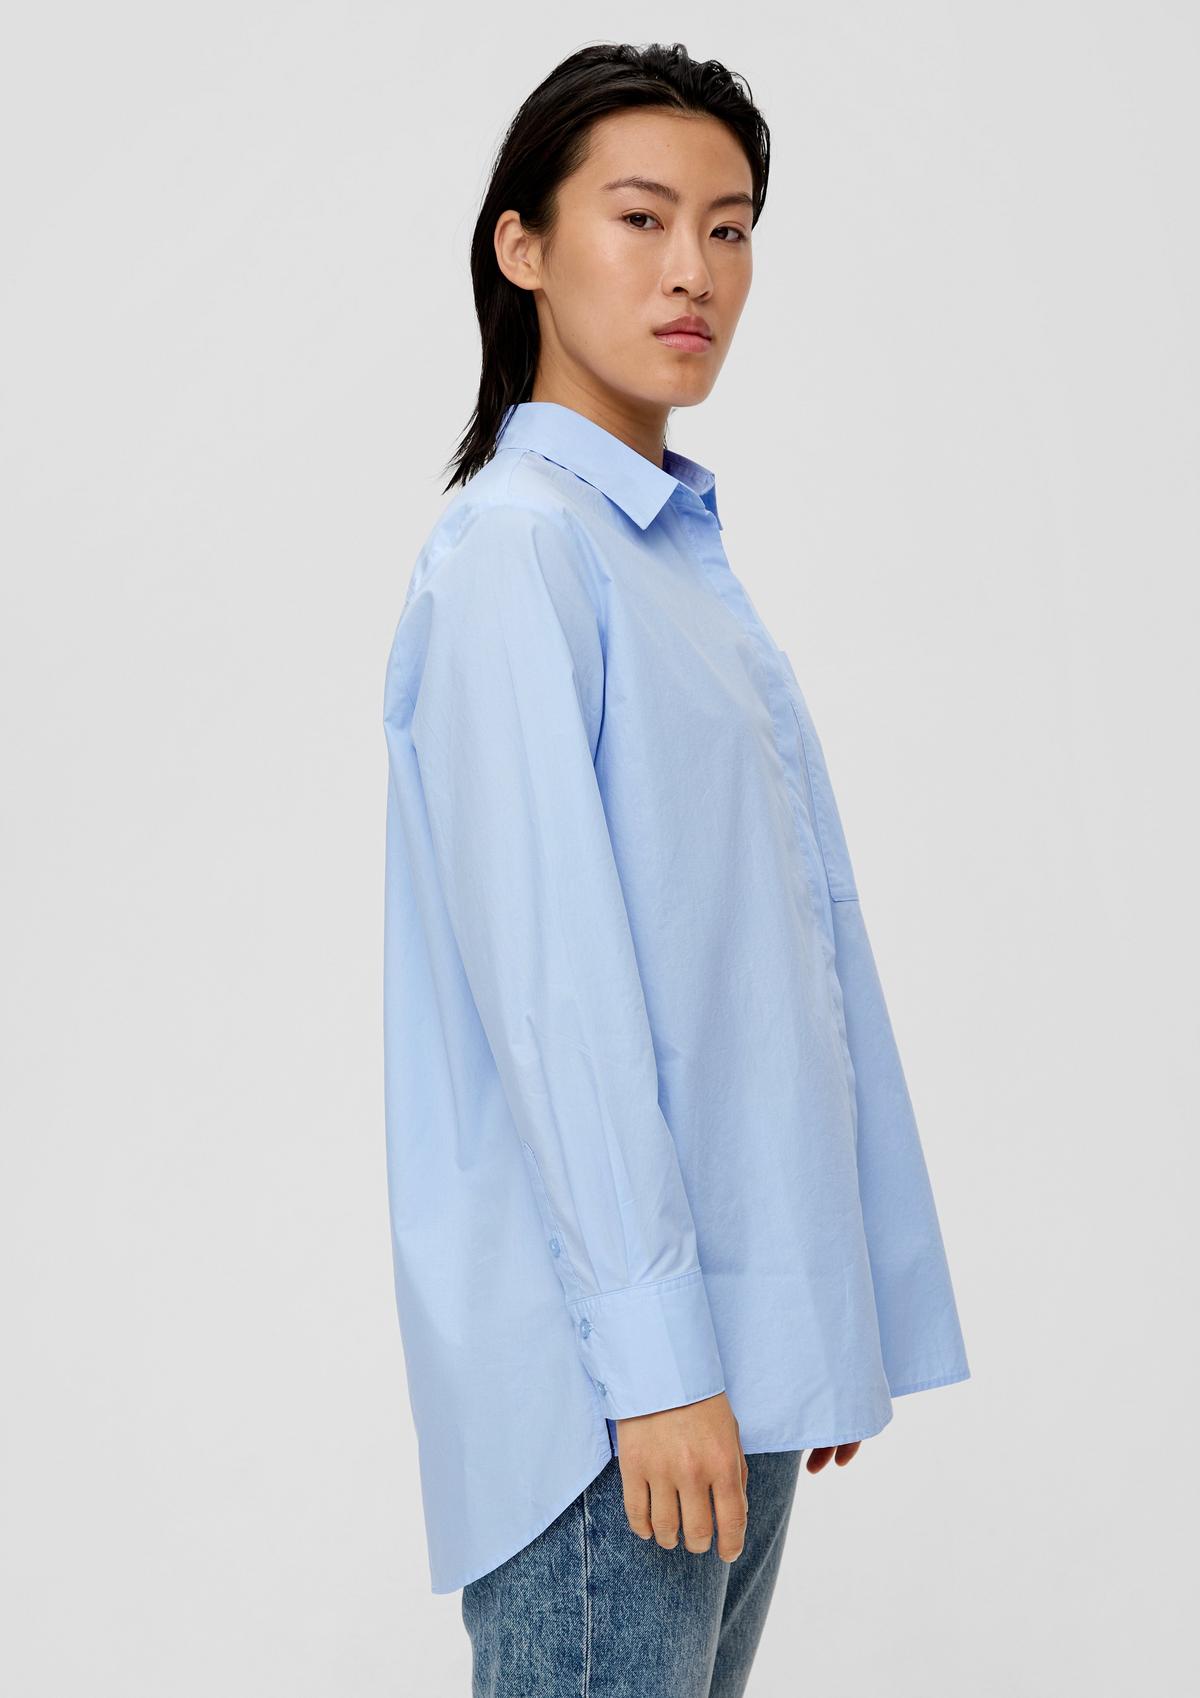 Katoene blouse met langer achterpand